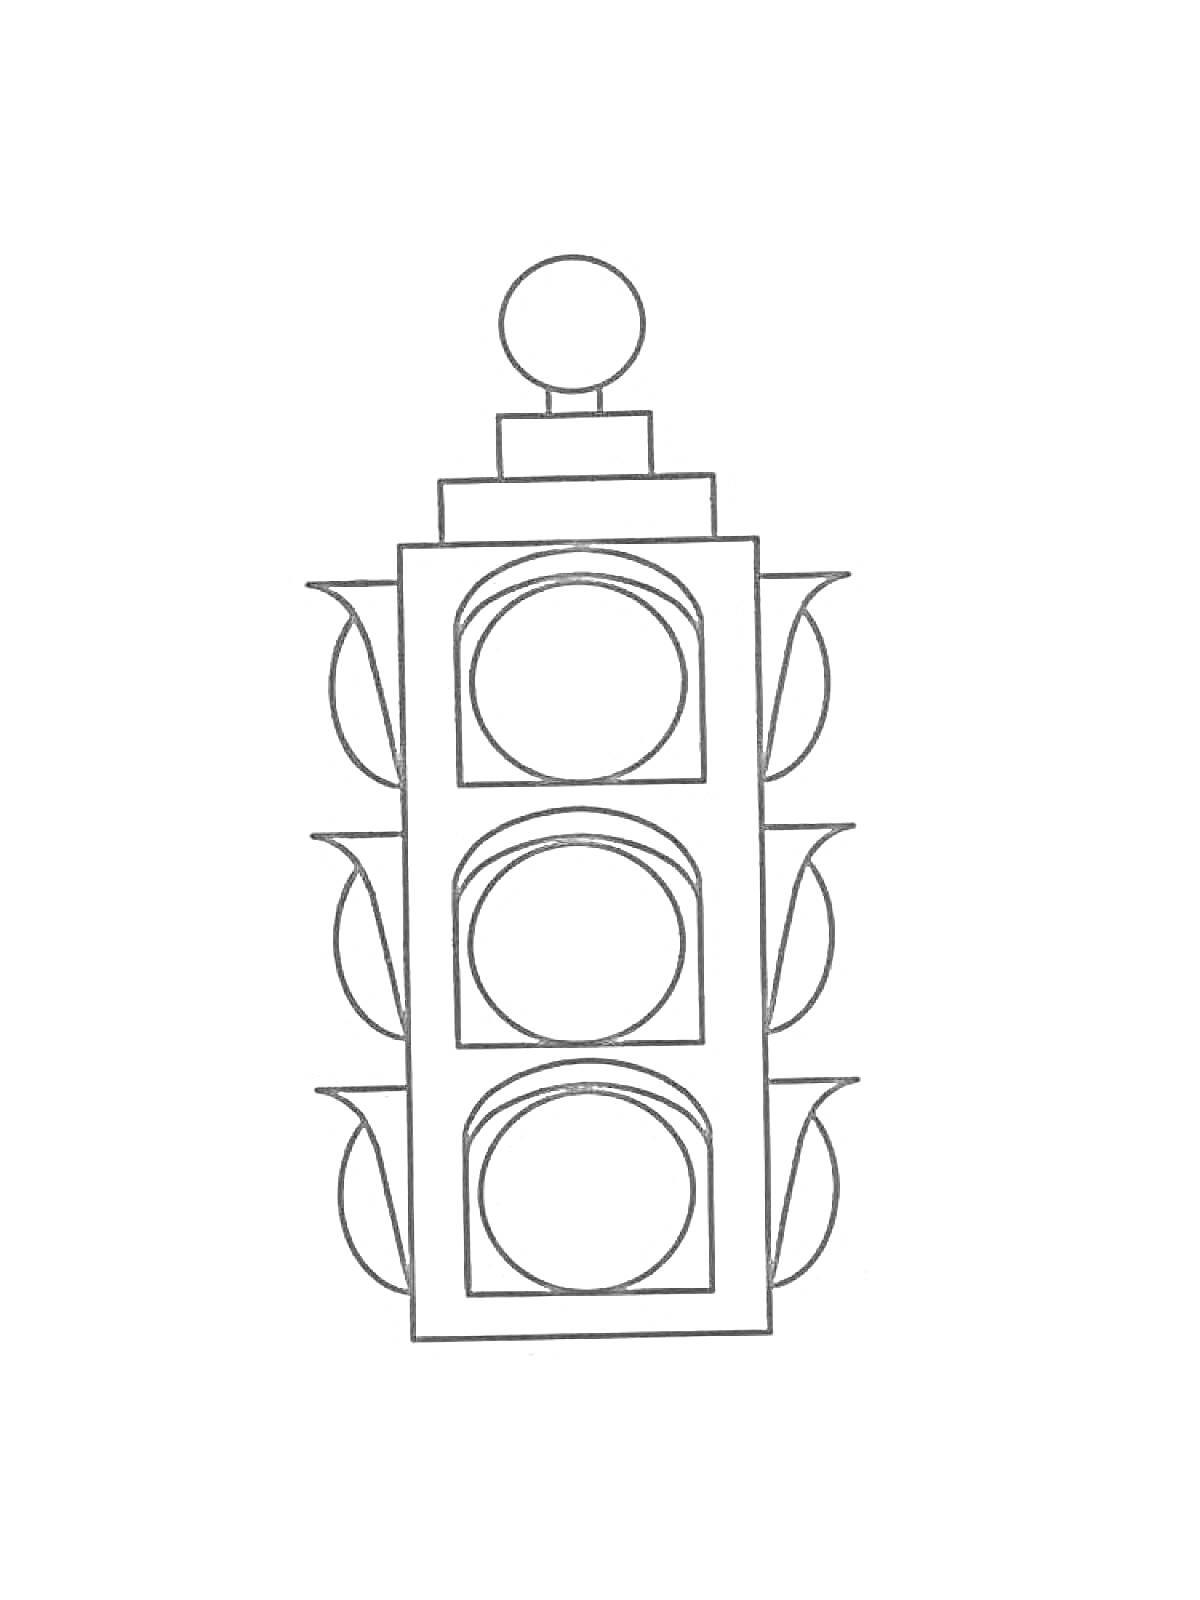 Раскраска Светофор с тремя круглыми секциями и дополнительными элементами в виде боковых выступов и верхней округлой детали